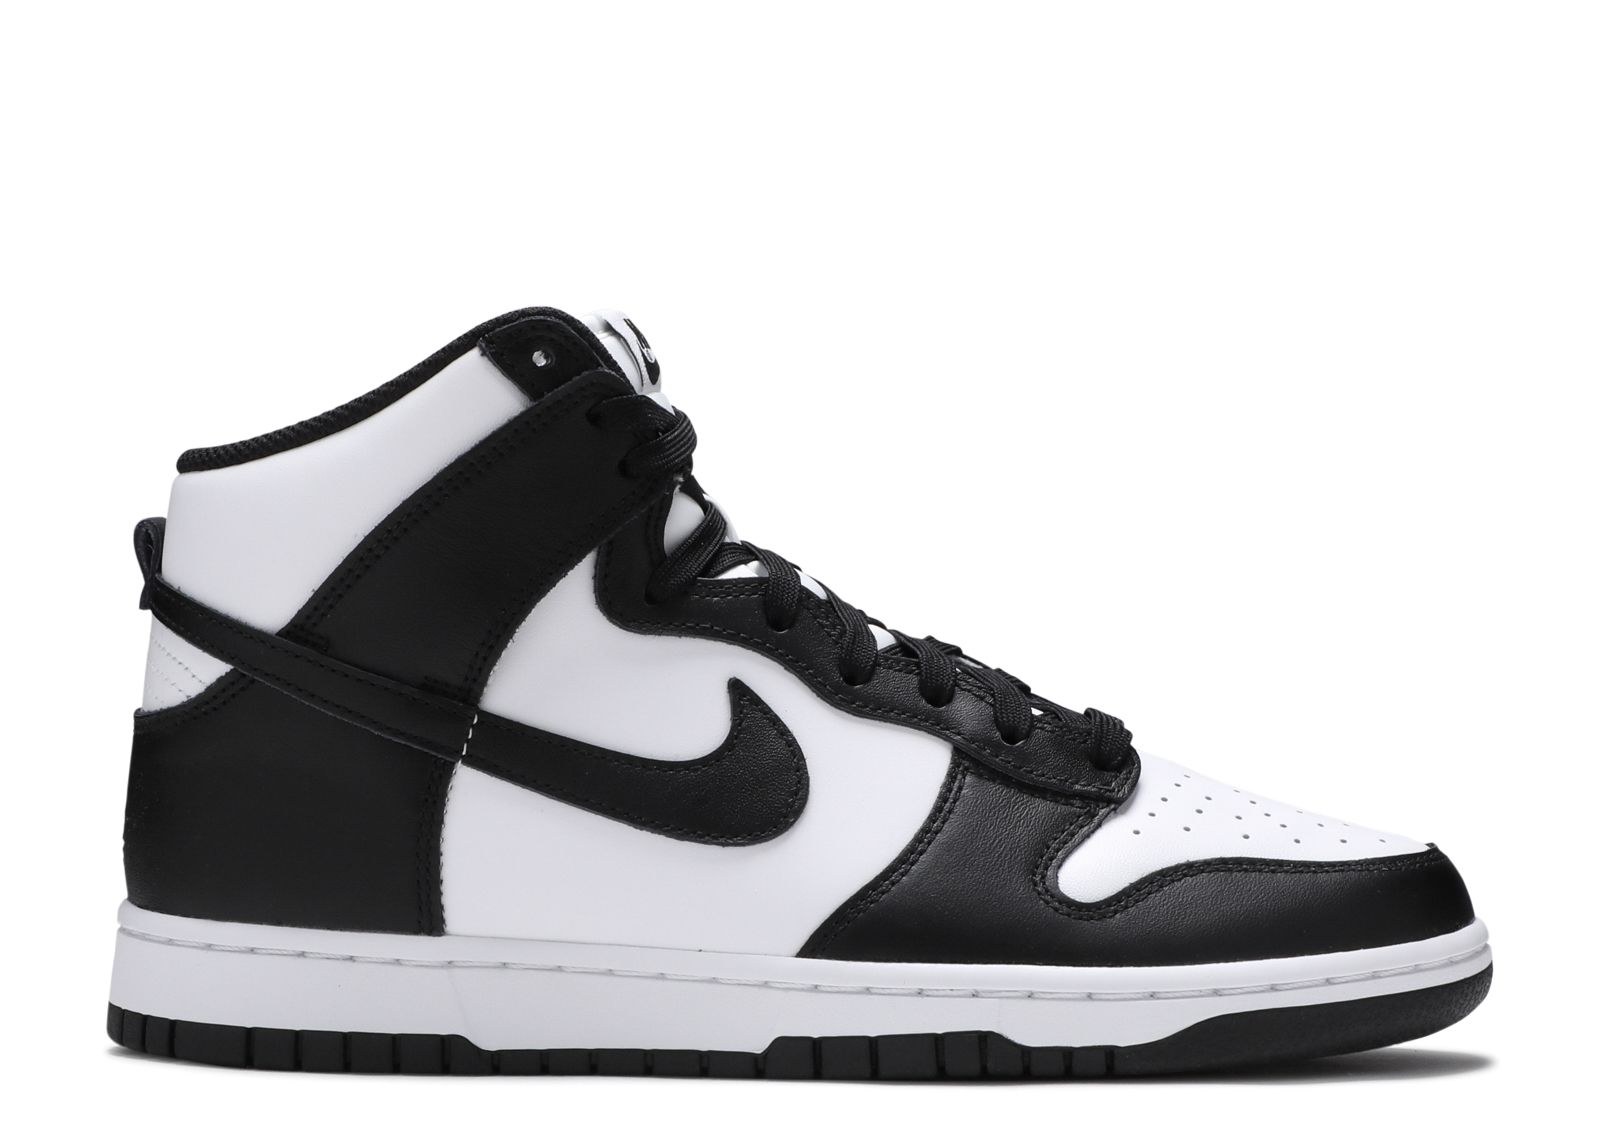 Nike Dunk High Black and White スニーカー 靴 メンズ 購入して無料で入手